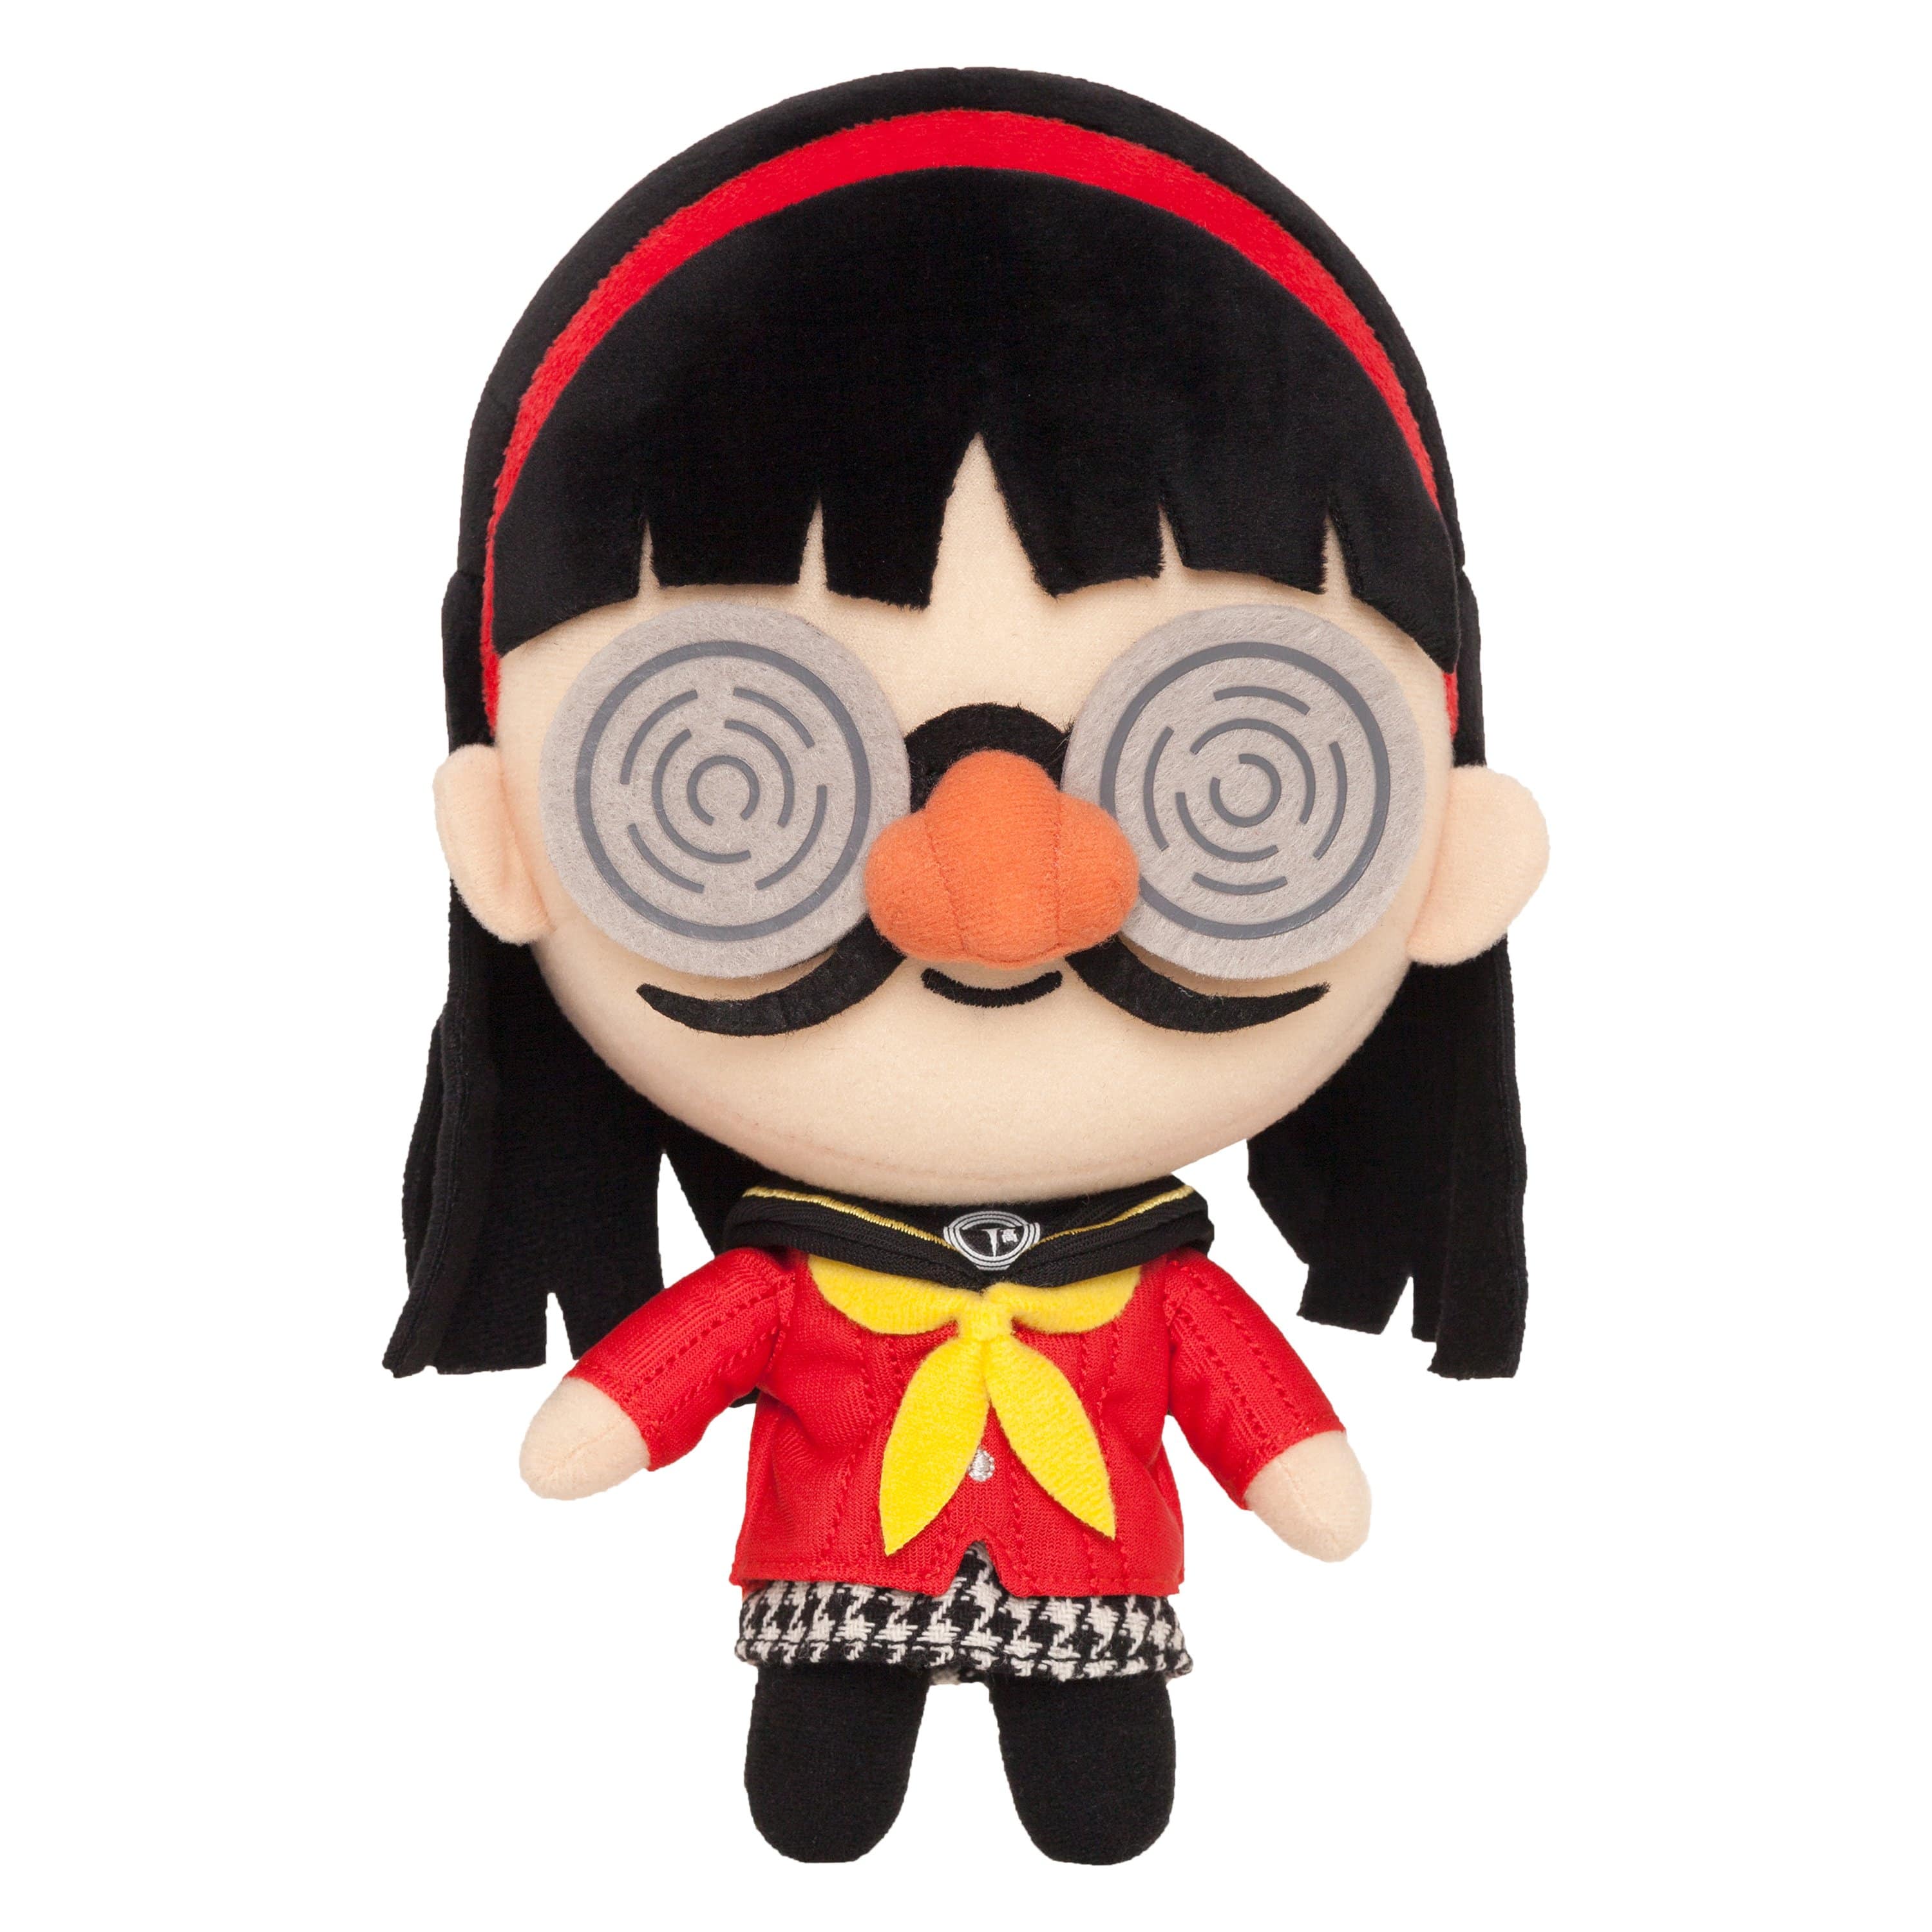 Persona 4 - 10" Yukiko Amagi Collector's Stuffed Plushie With Glasses